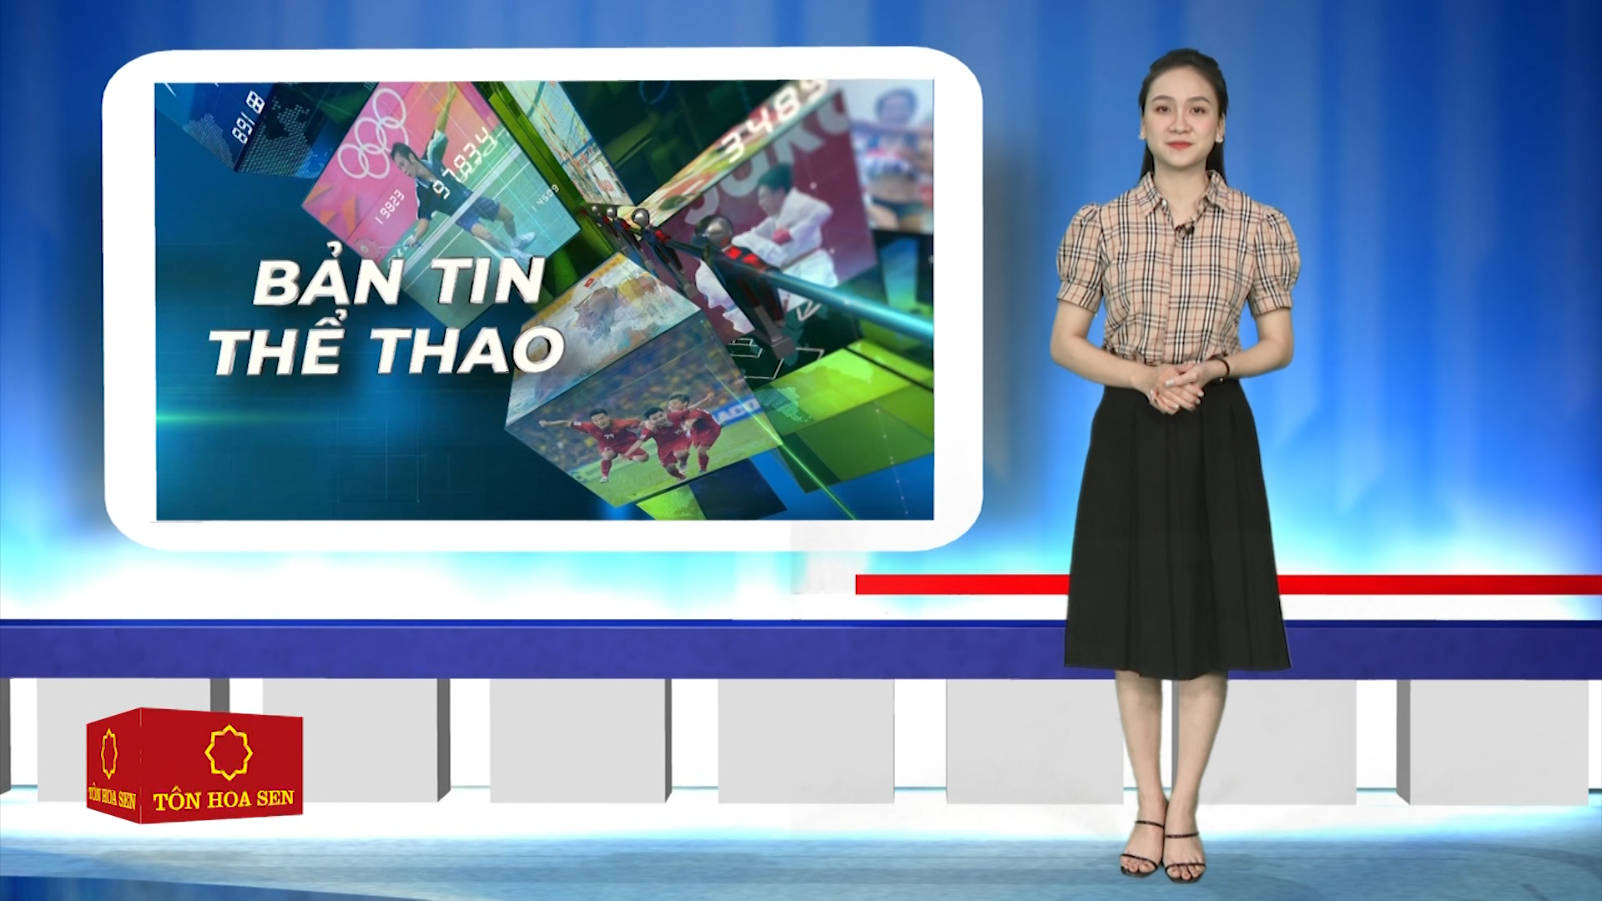 BẢN TIN THỂ THAO NTV- ngày 7/11/2021